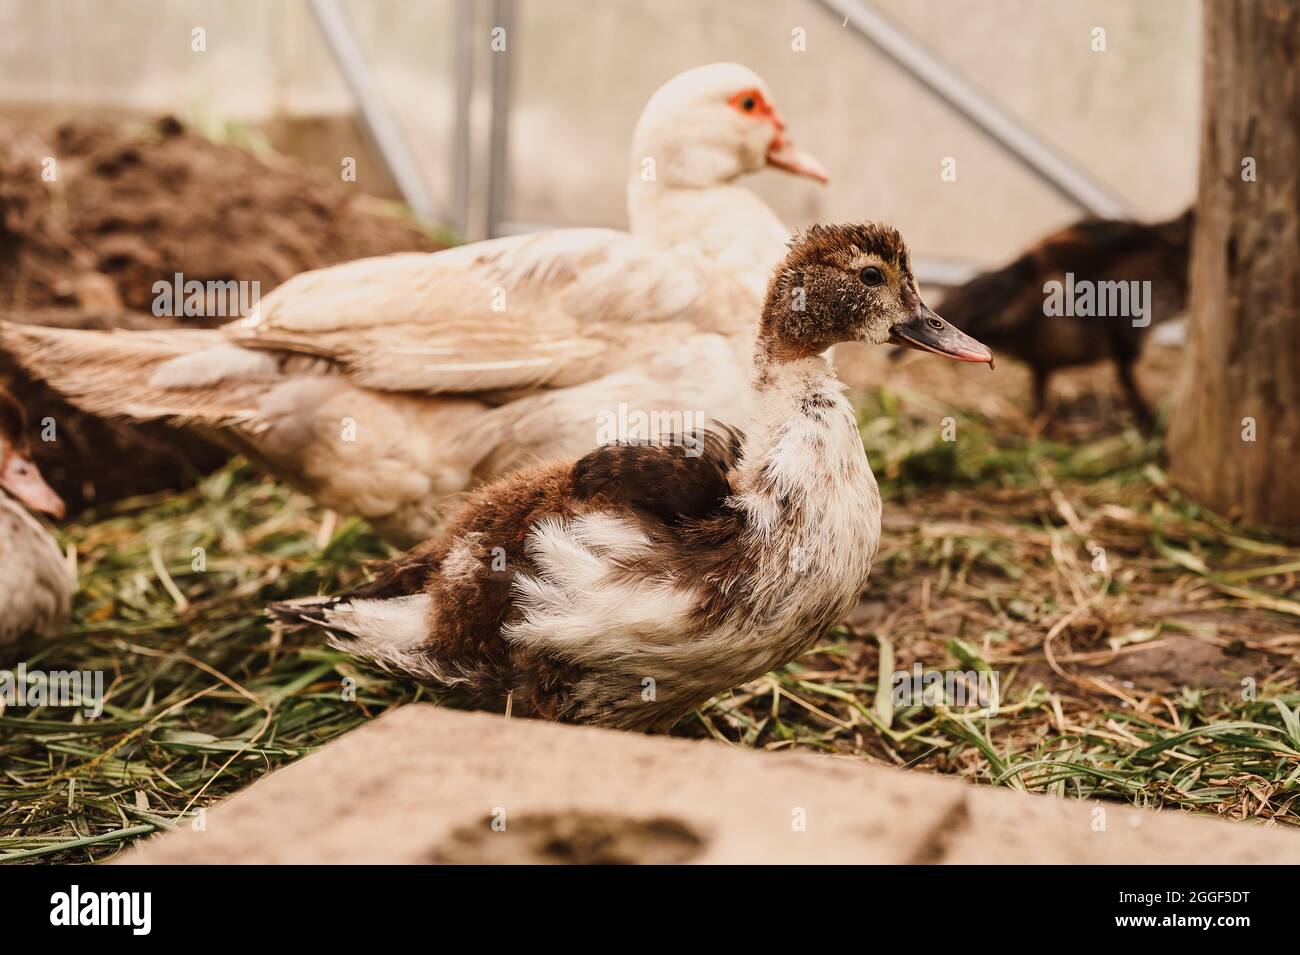 Moschus- oder indo-Enten auf einem Bauernhof in einem Hühnerstall. Zucht  von Geflügel in kleinerer häuslicher Landwirtschaft. Eine Mutter Ente und  aufgewachsen junge Enten in Stockfotografie - Alamy